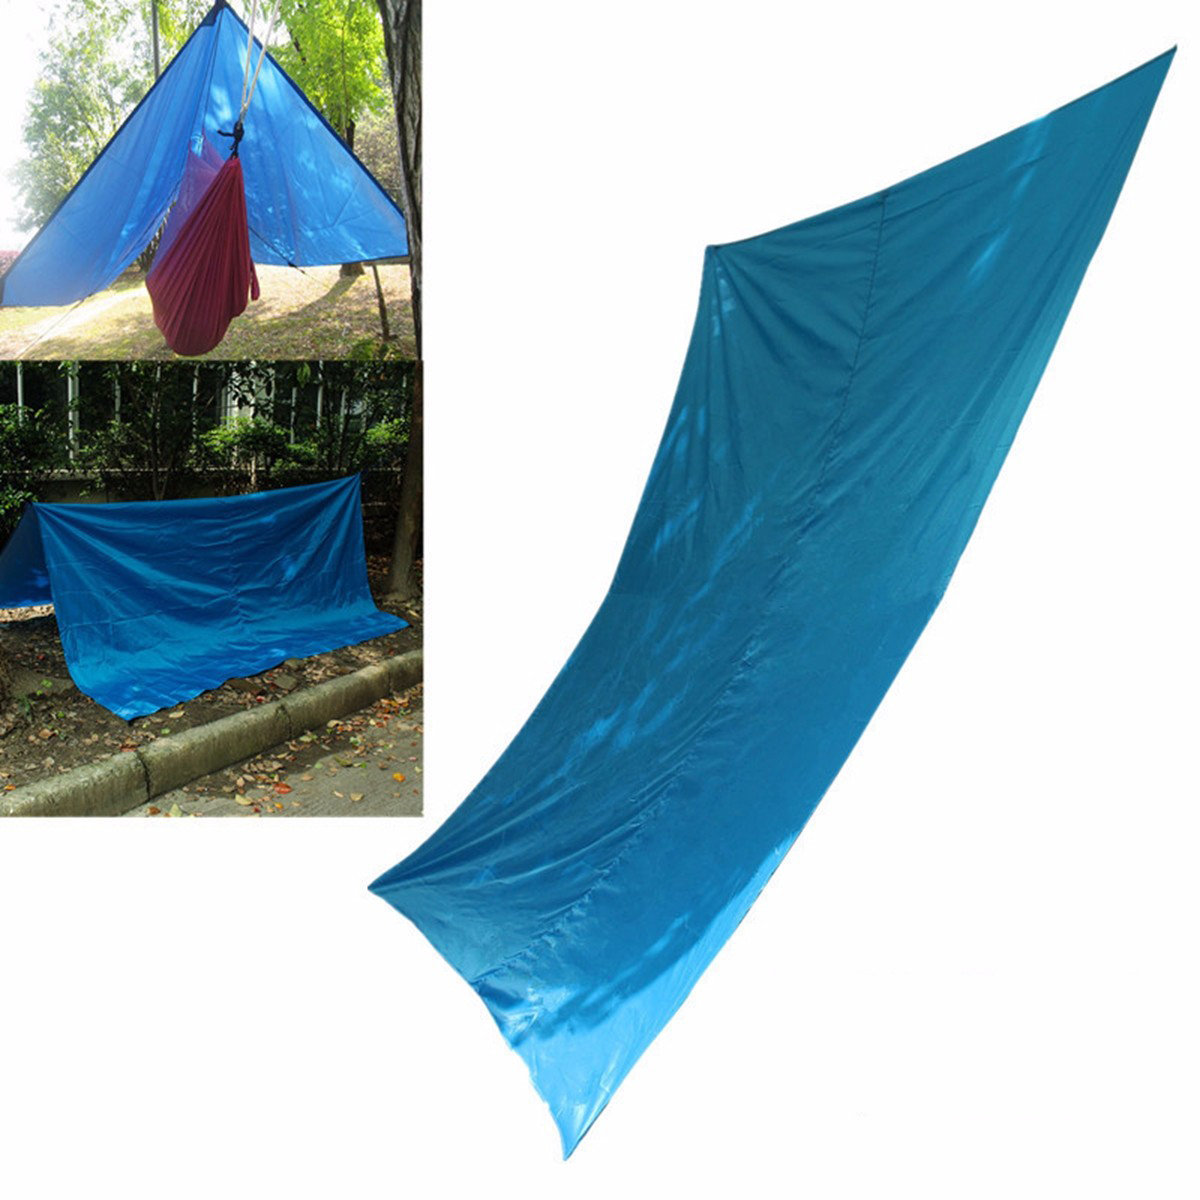 Hamaca Havelock para exteriores con toldo y carpa de sombra de 300x300 cm para protección solar durante viajes, camping y senderismo.